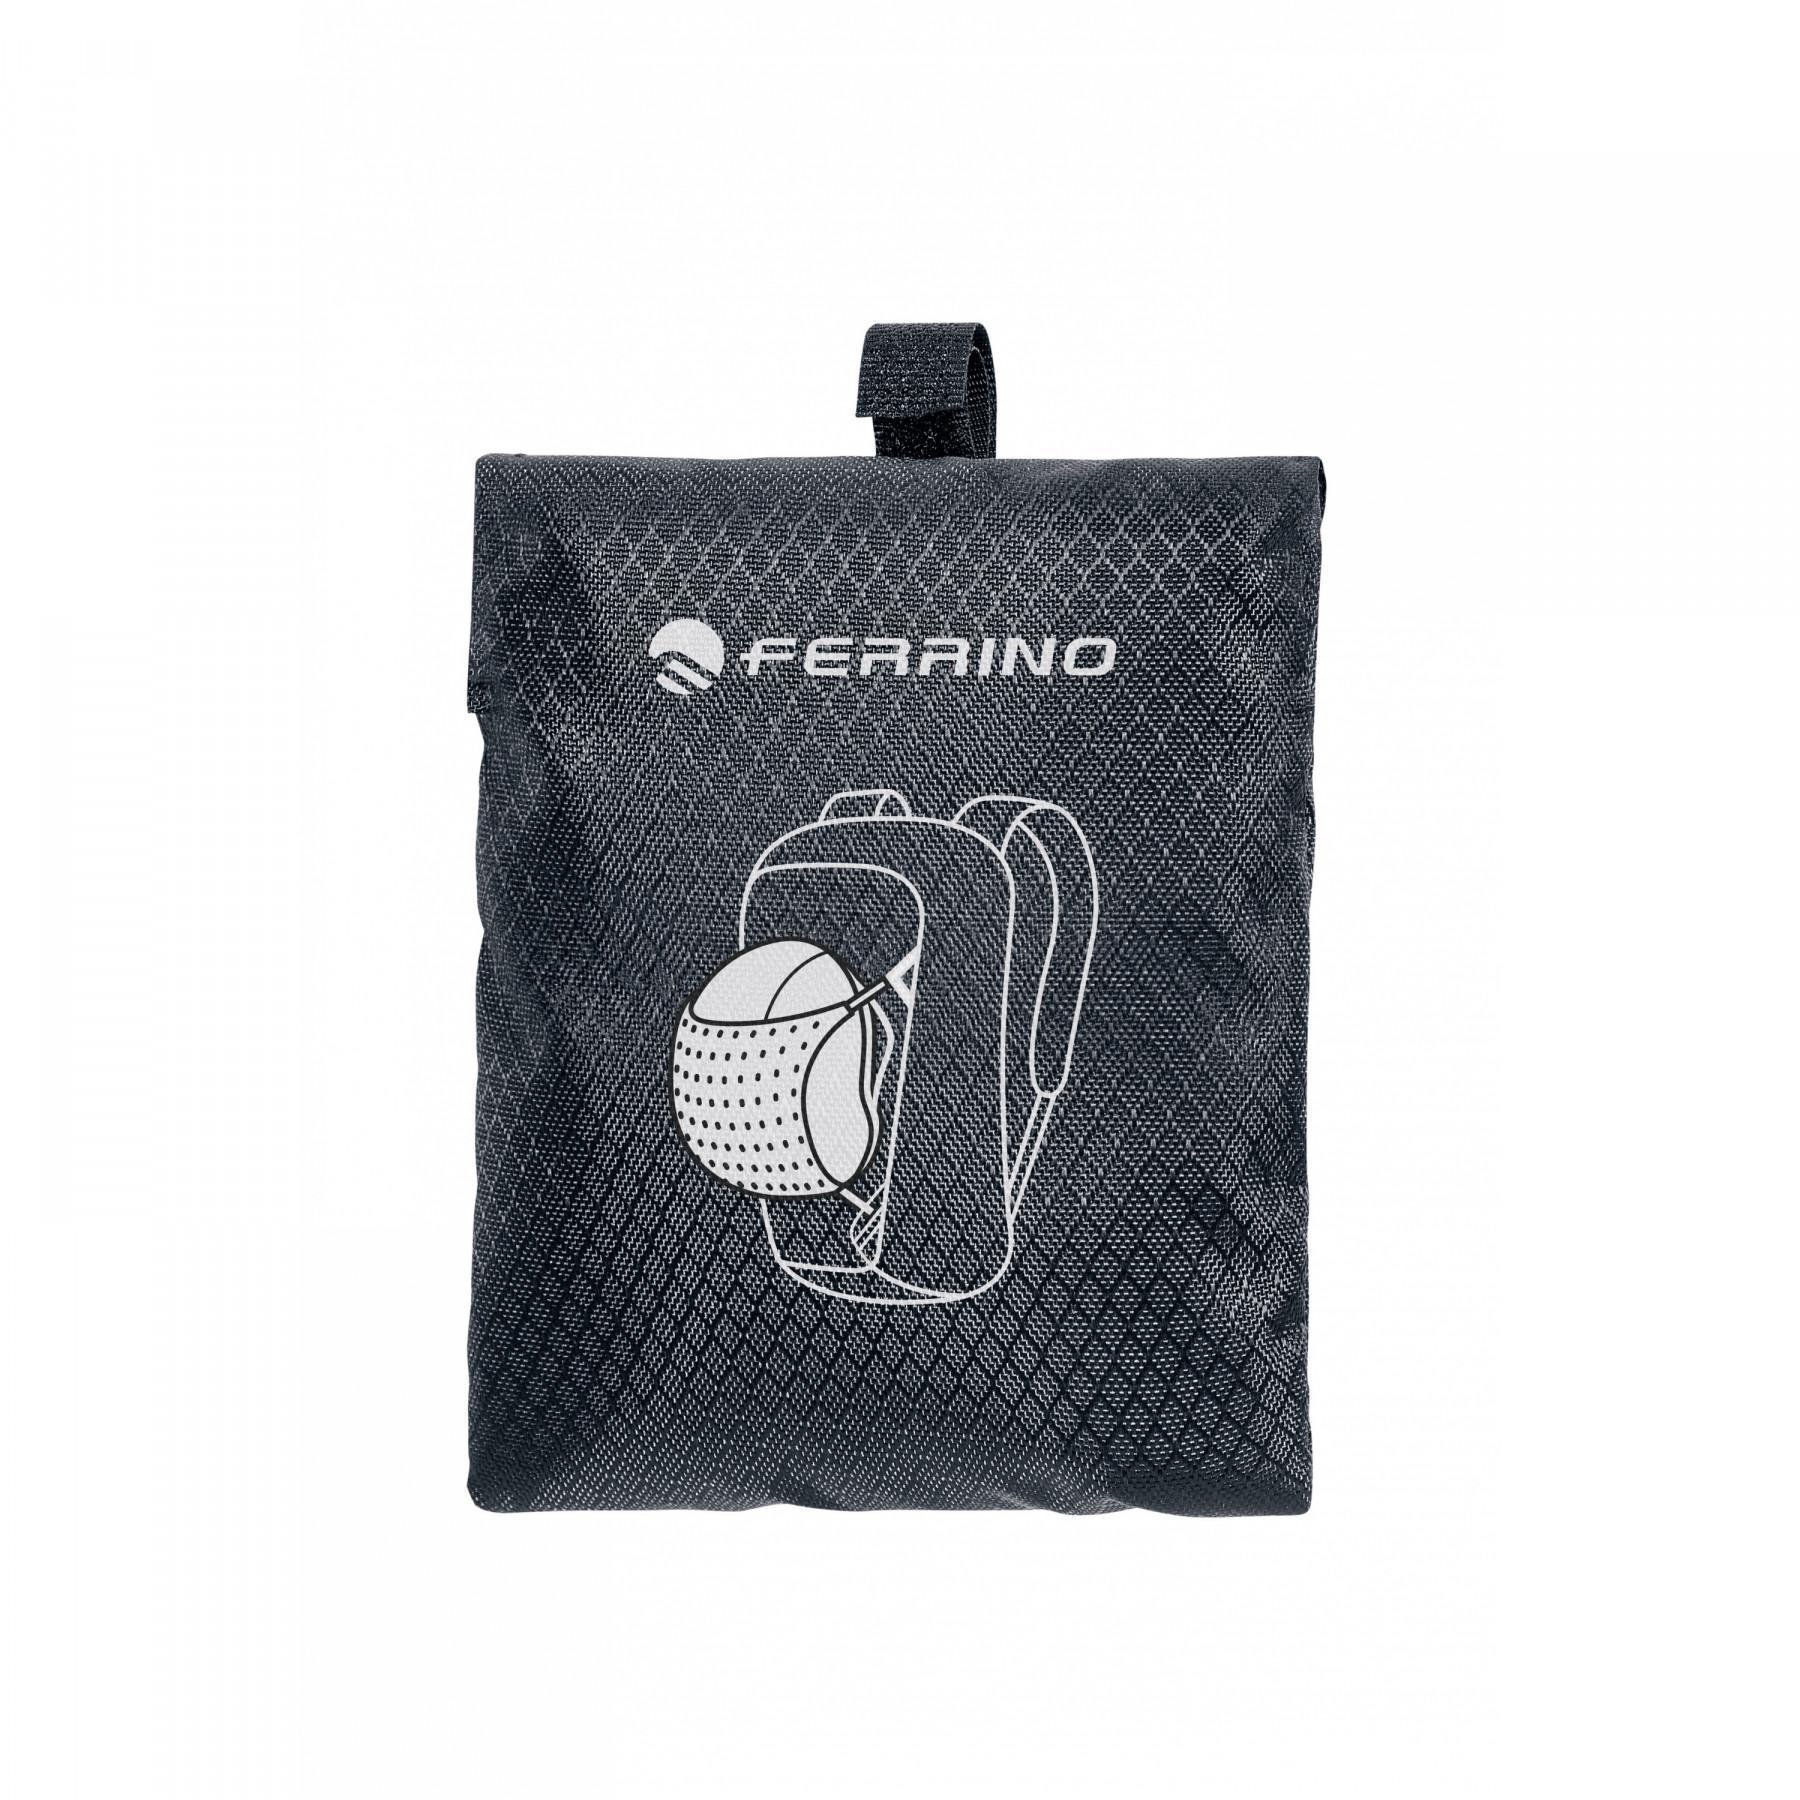 Portacascos externo adaptable a las mochilas Ferrino